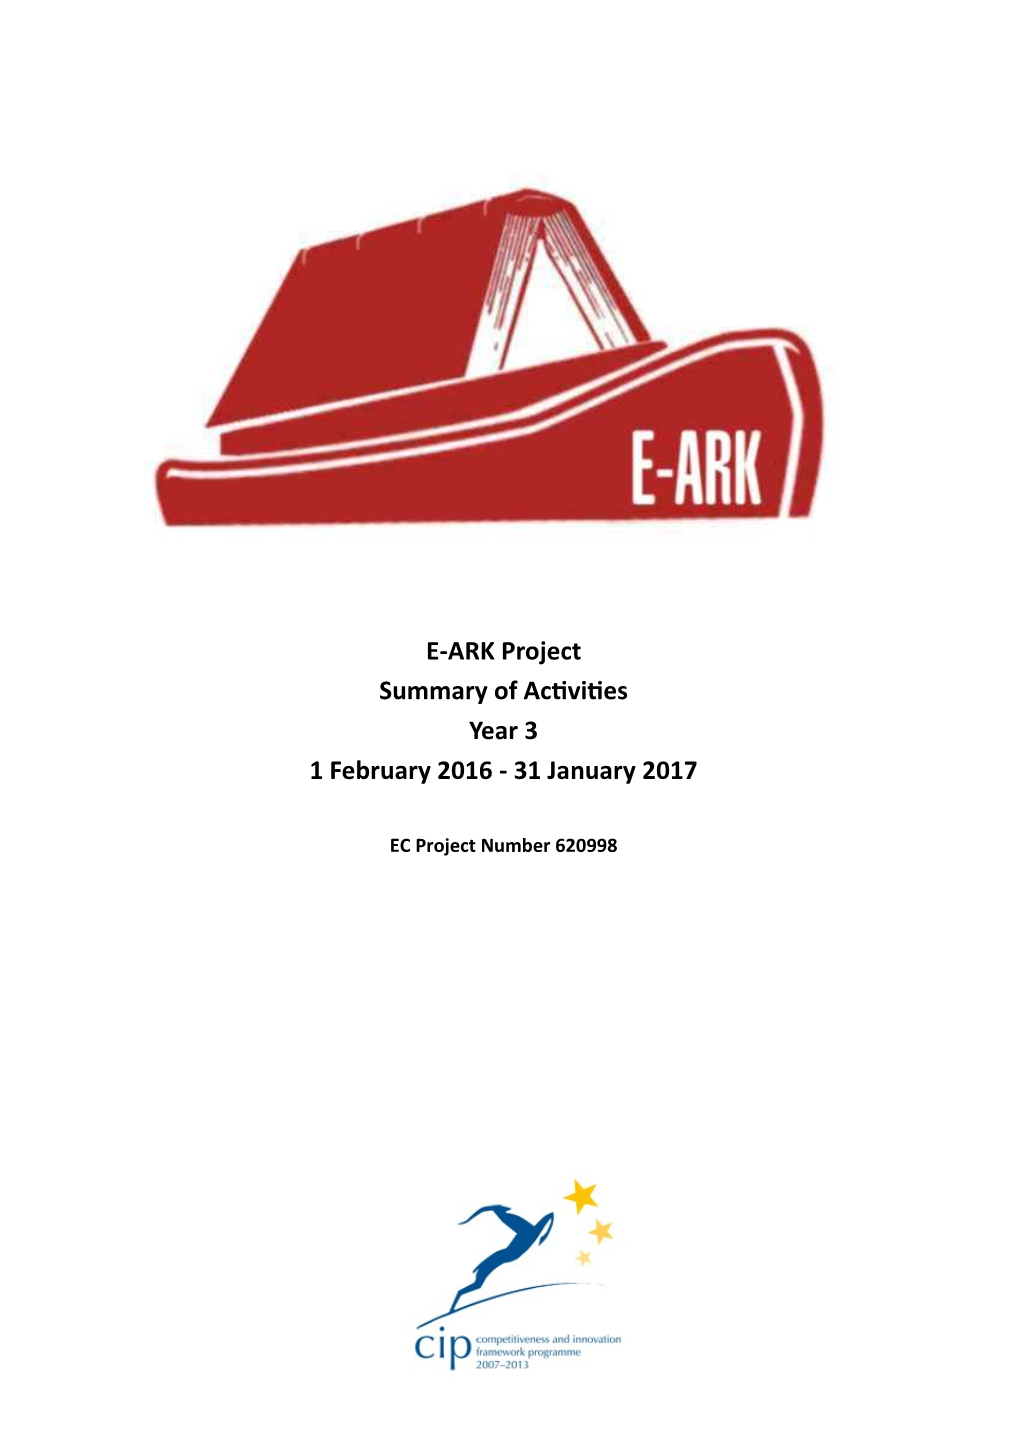 E-ARK Project Summary of Activities Year 3 1 February 2016 - 31 January 2017